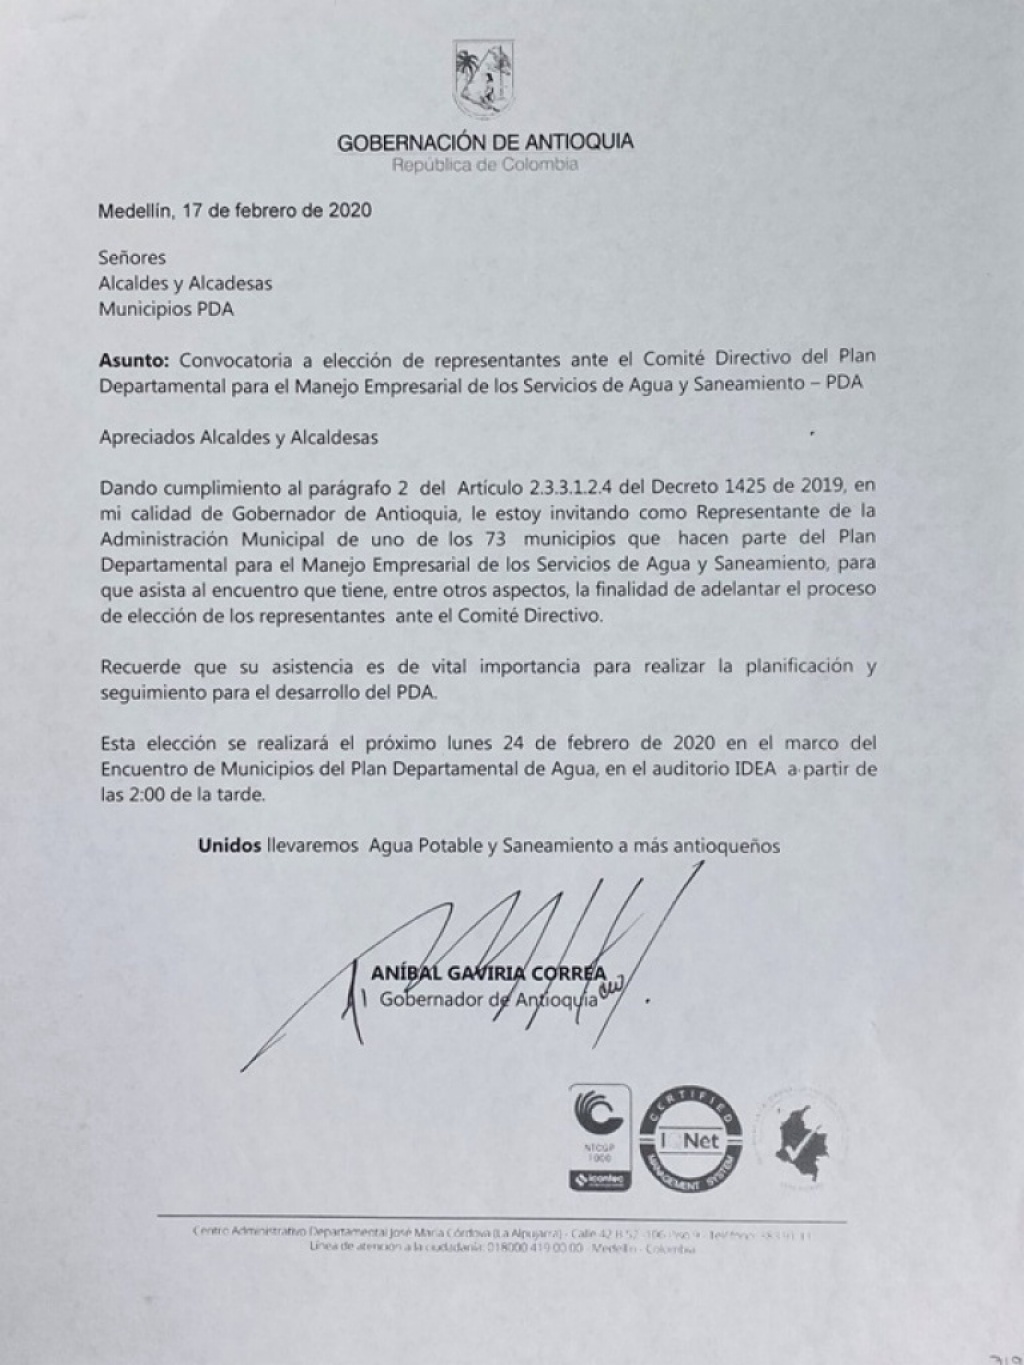 Copia de la carta mediante la cual el Gobernador de Antioquia convocó a los alcaldes y alcaldesas a la reunión del PDA